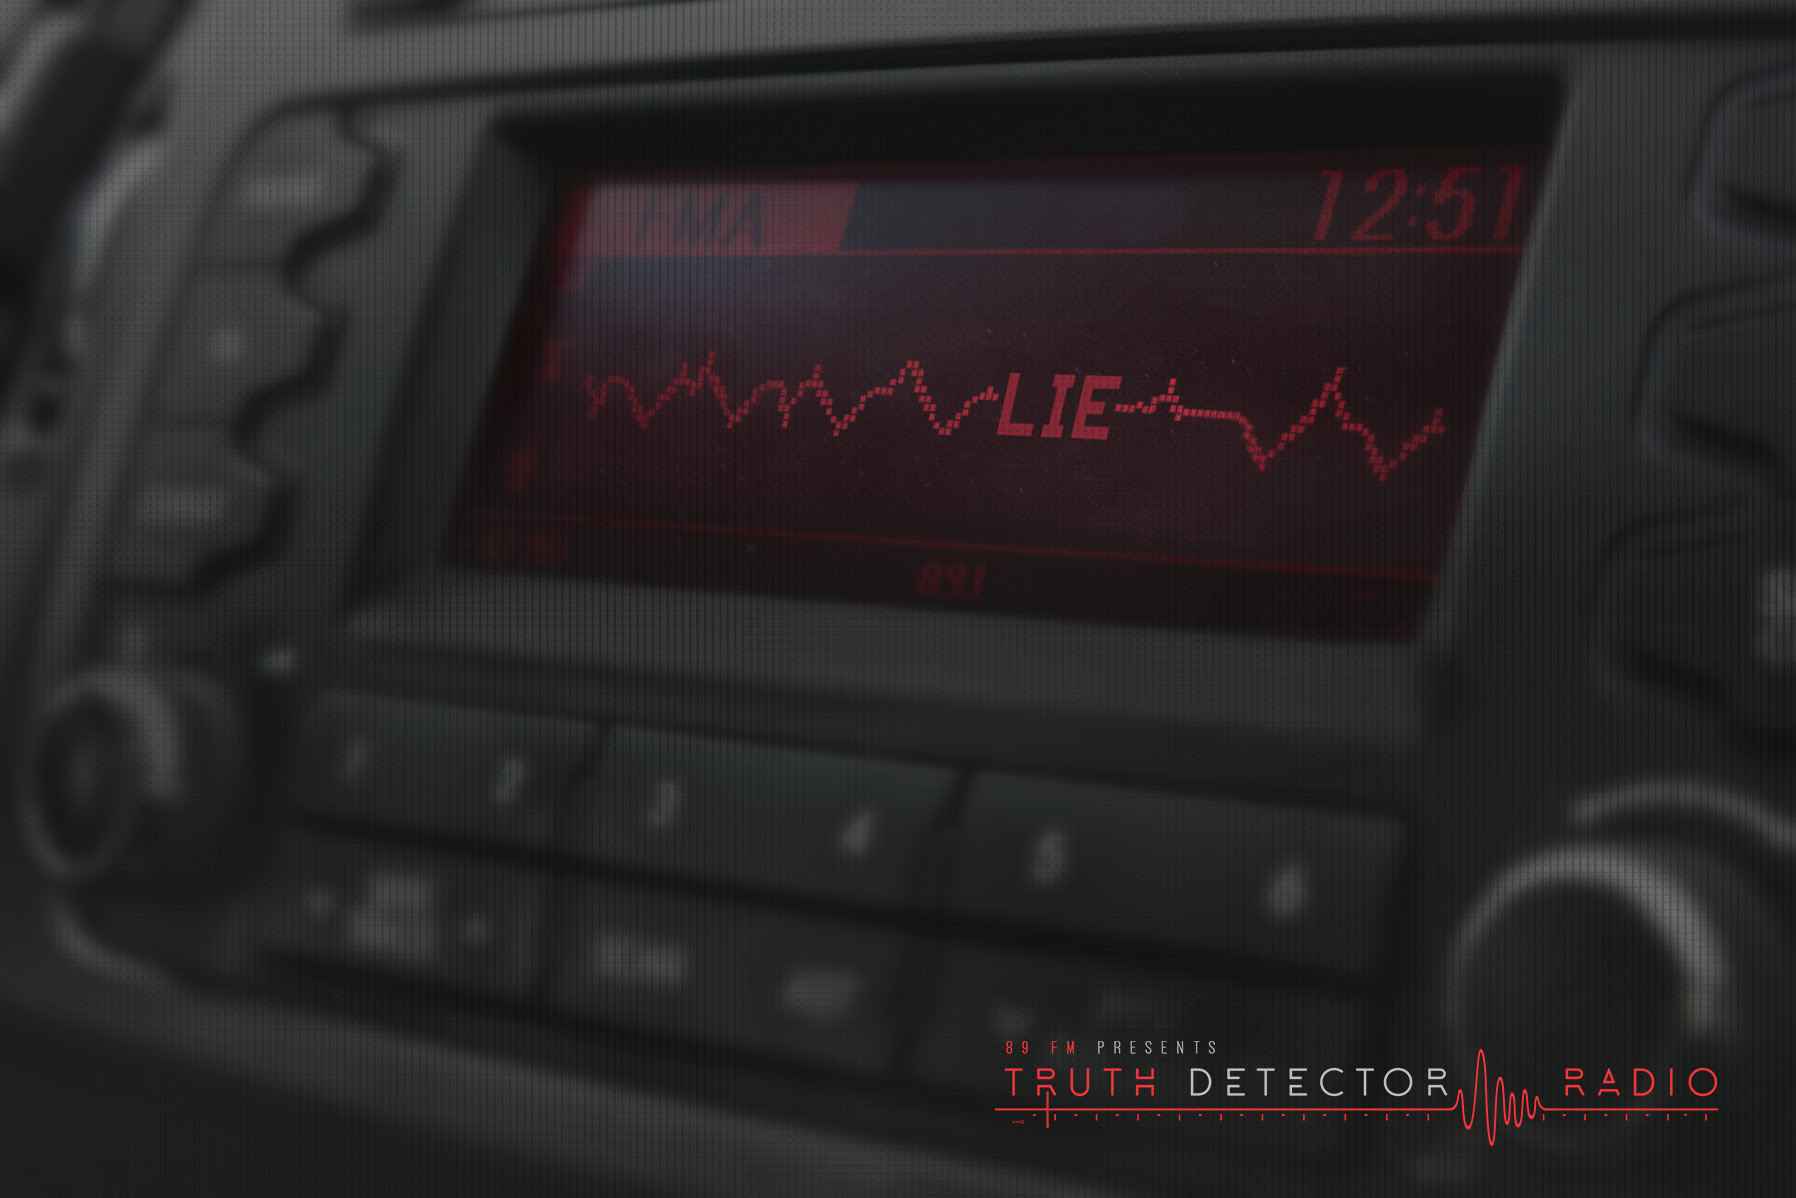 Portada de El dial del automóvil muestra si el entrevistado de 89FM miente o dice la verdad, creado por DM9DDB